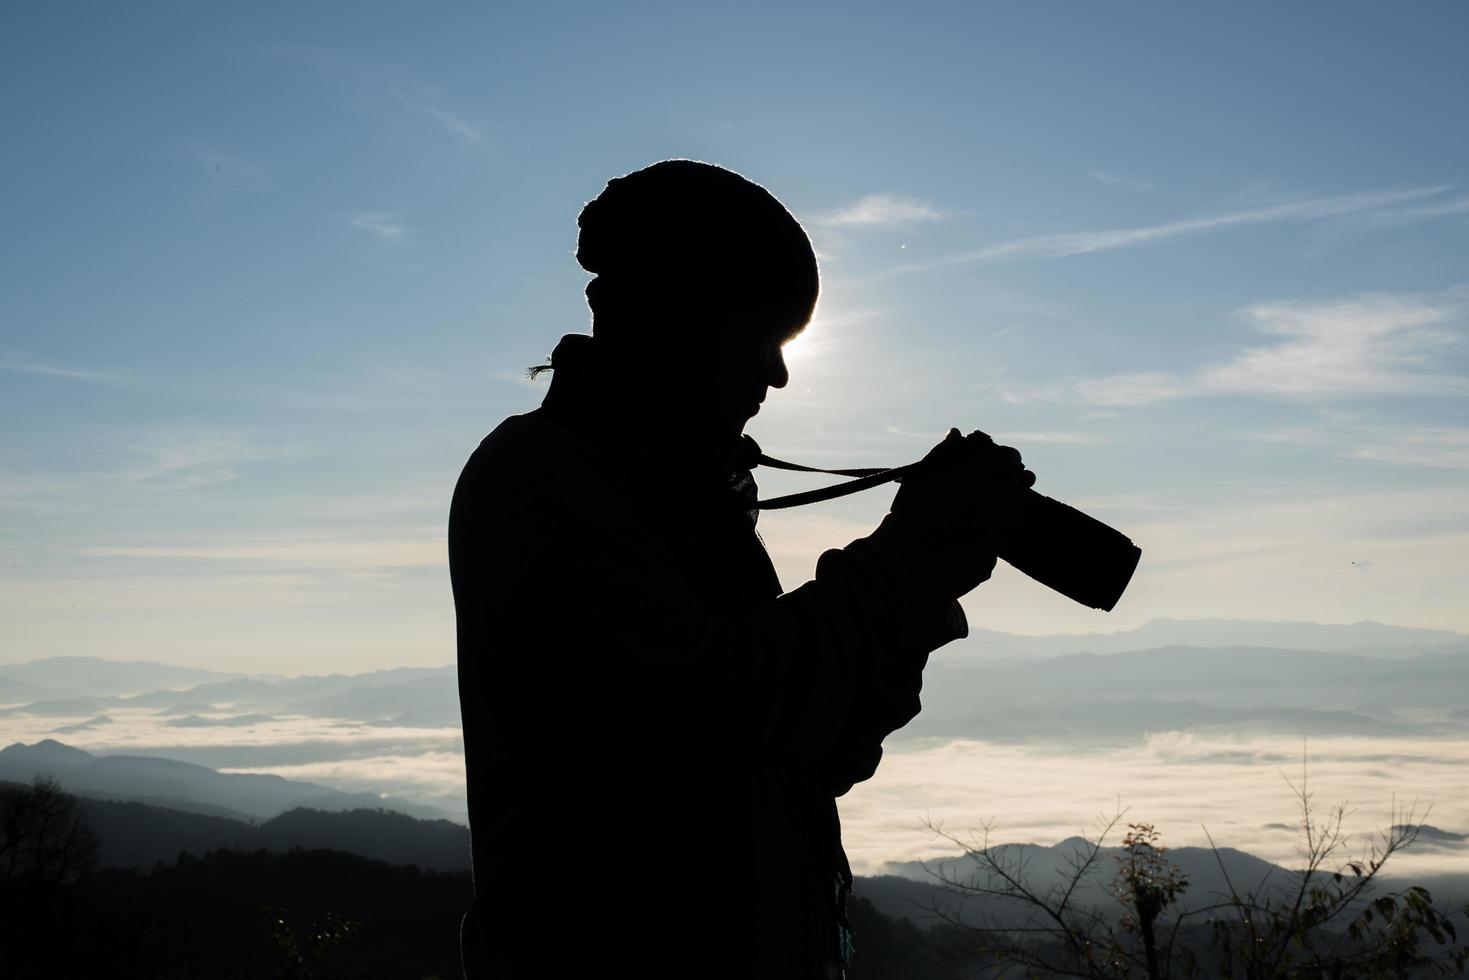 silhouette de jeune photographe tenant un appareil photo avec paysage de montagne